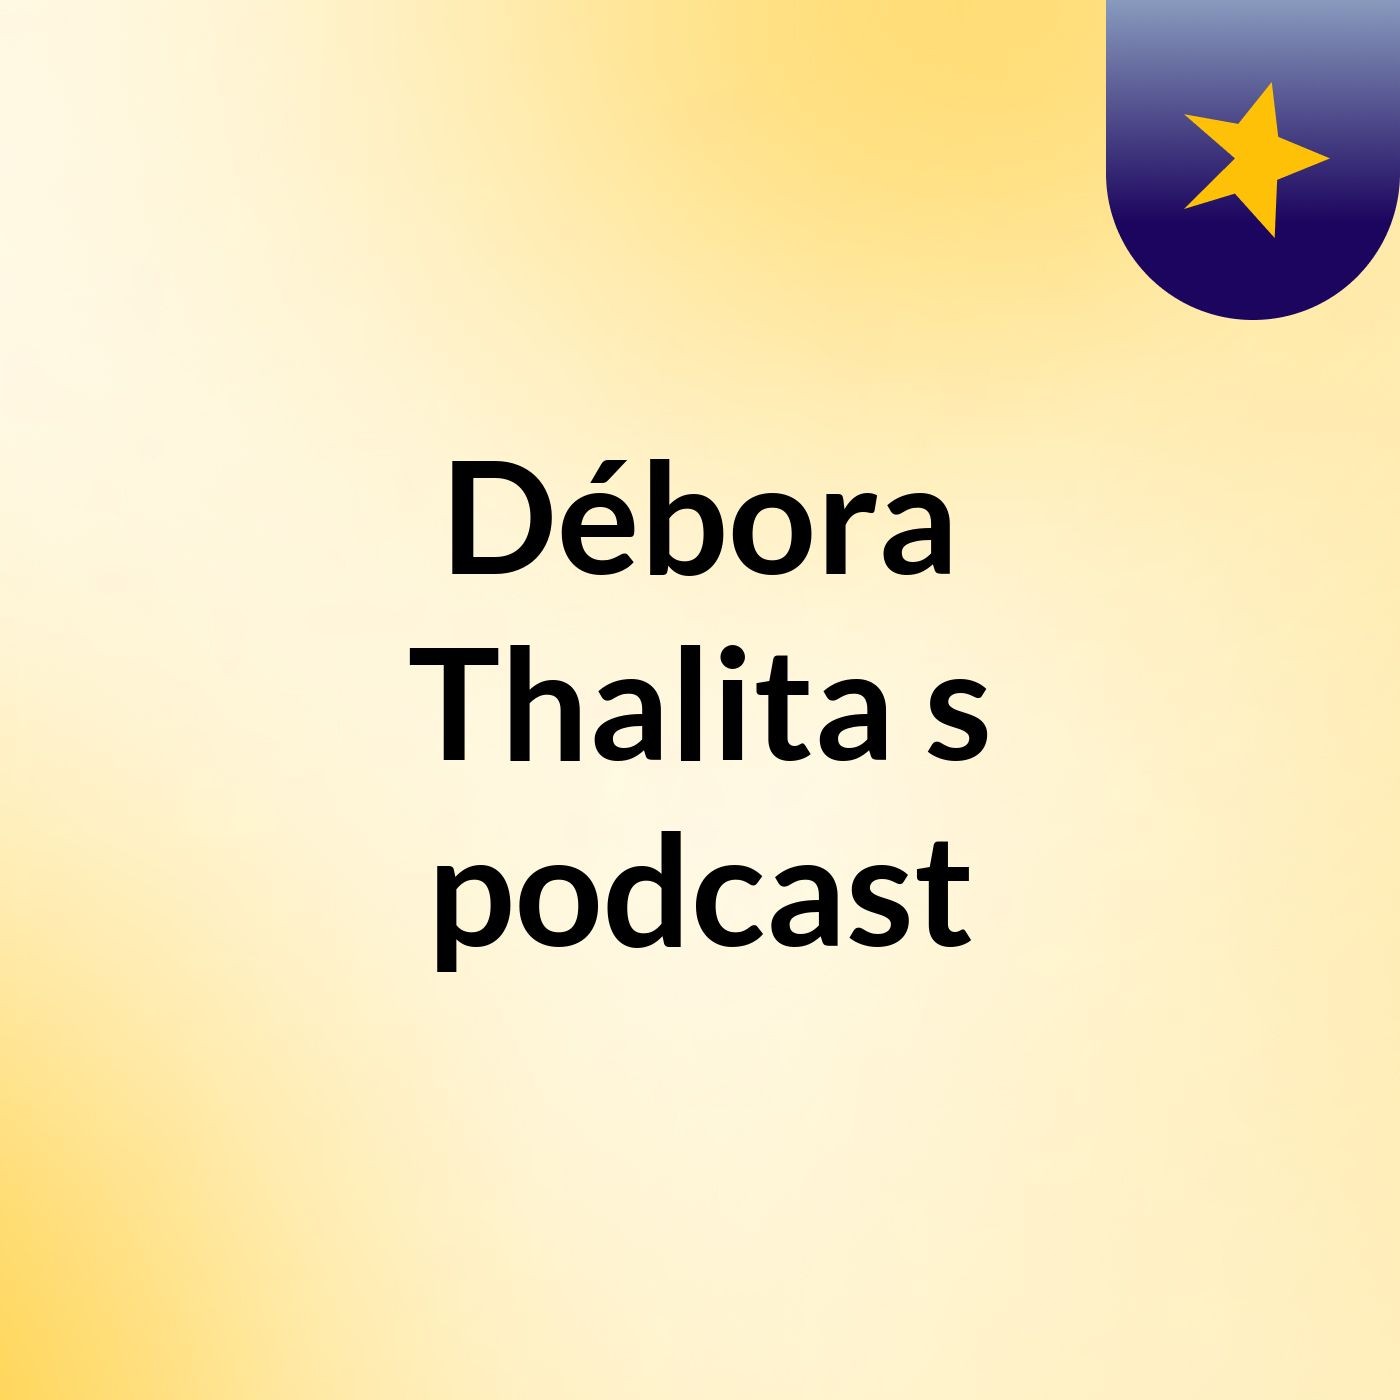 Débora Thalita's podcast